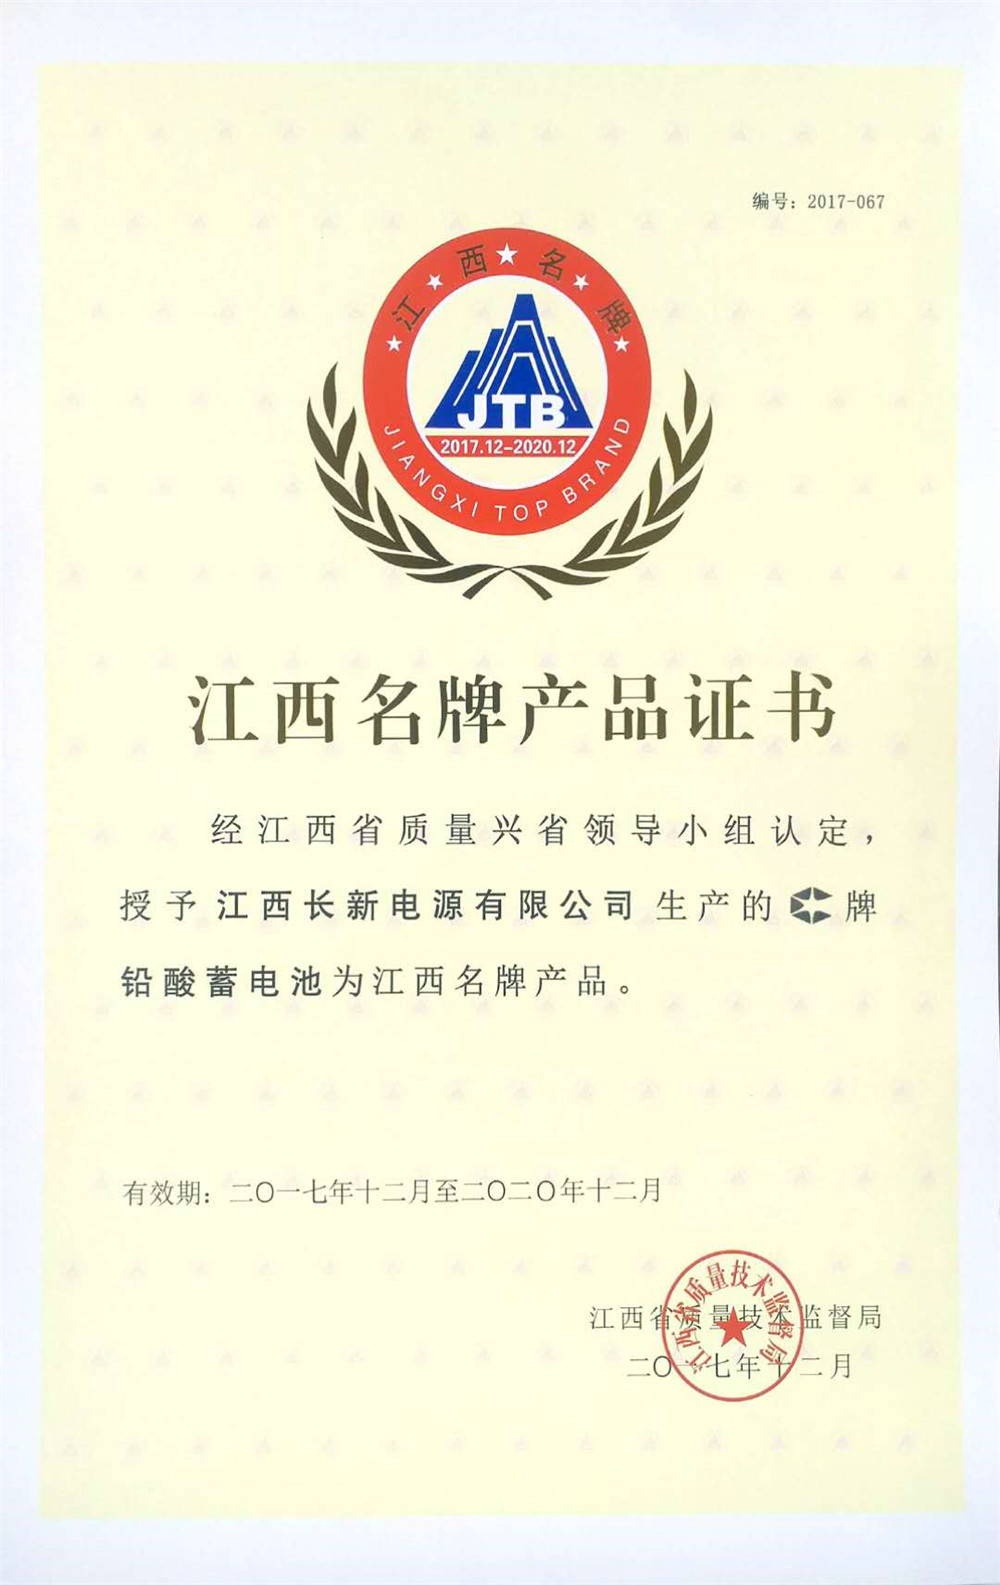 2017-2020 Jiangxi famous brand certificate